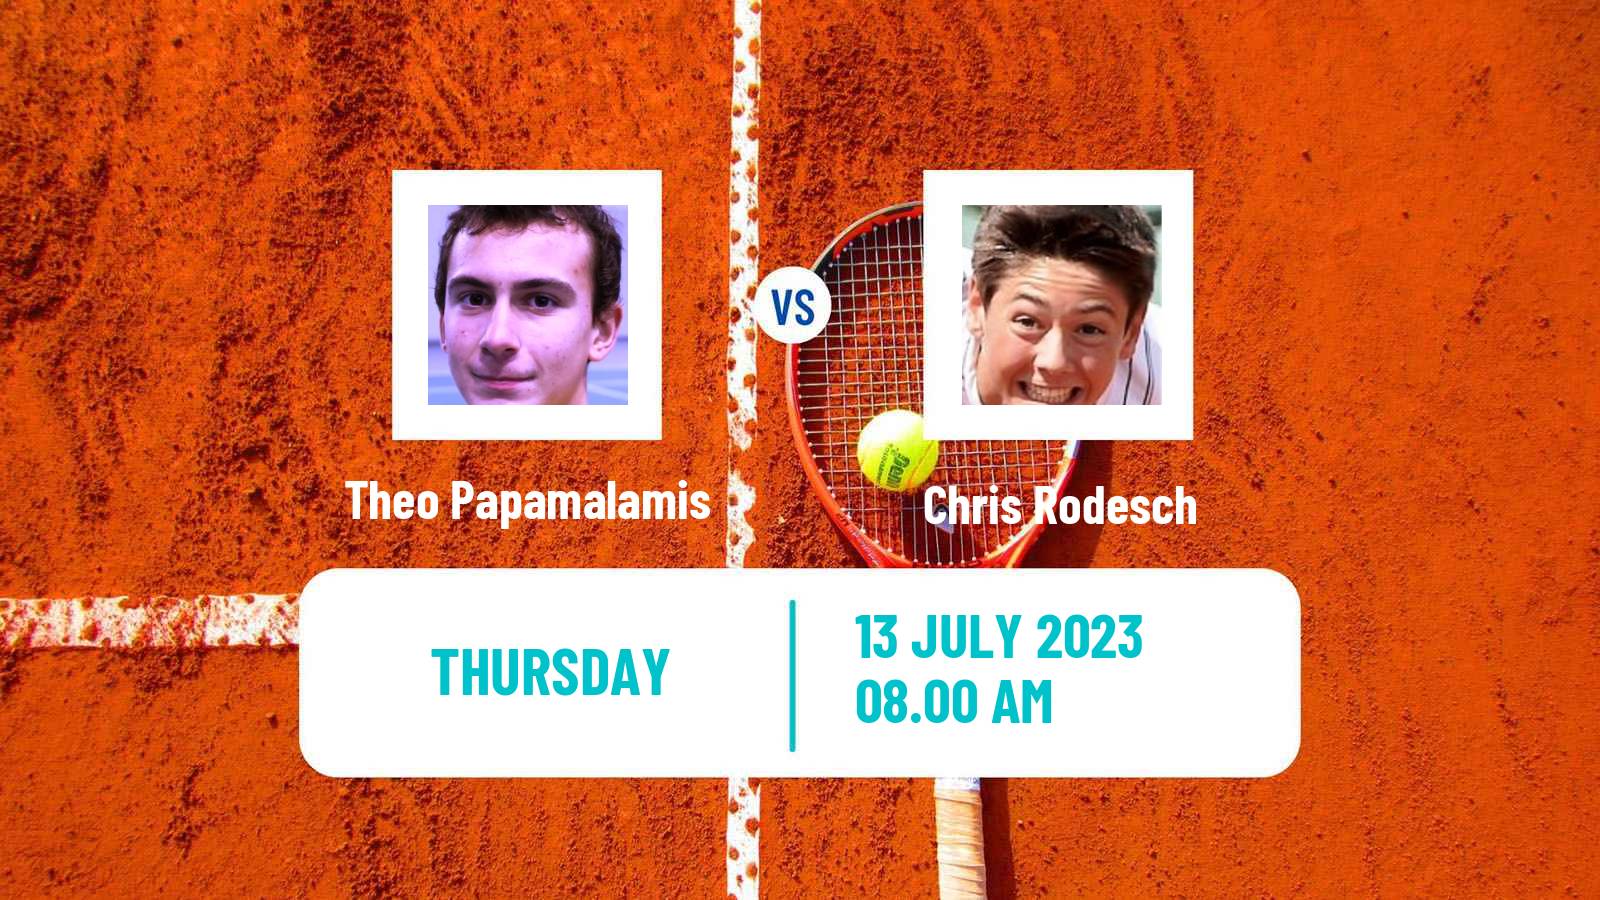 Tennis ITF M25 Esch Alzette Men Theo Papamalamis - Chris Rodesch